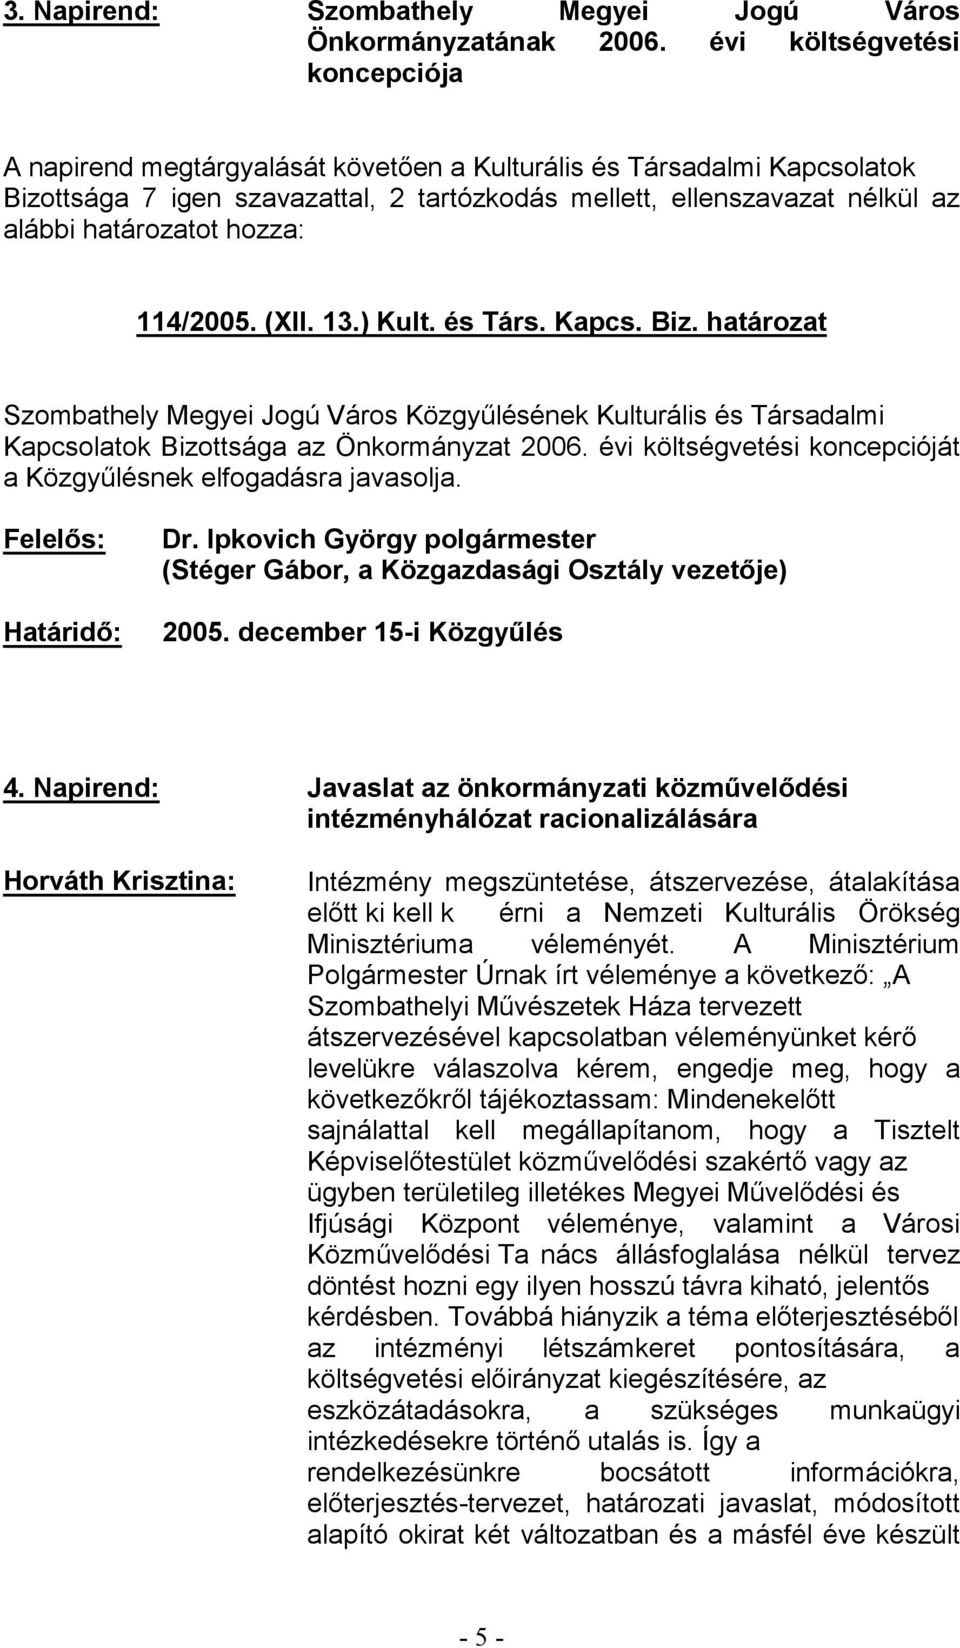 évi költségvetési koncepcióját (Stéger Gábo 2005. december 15-4.